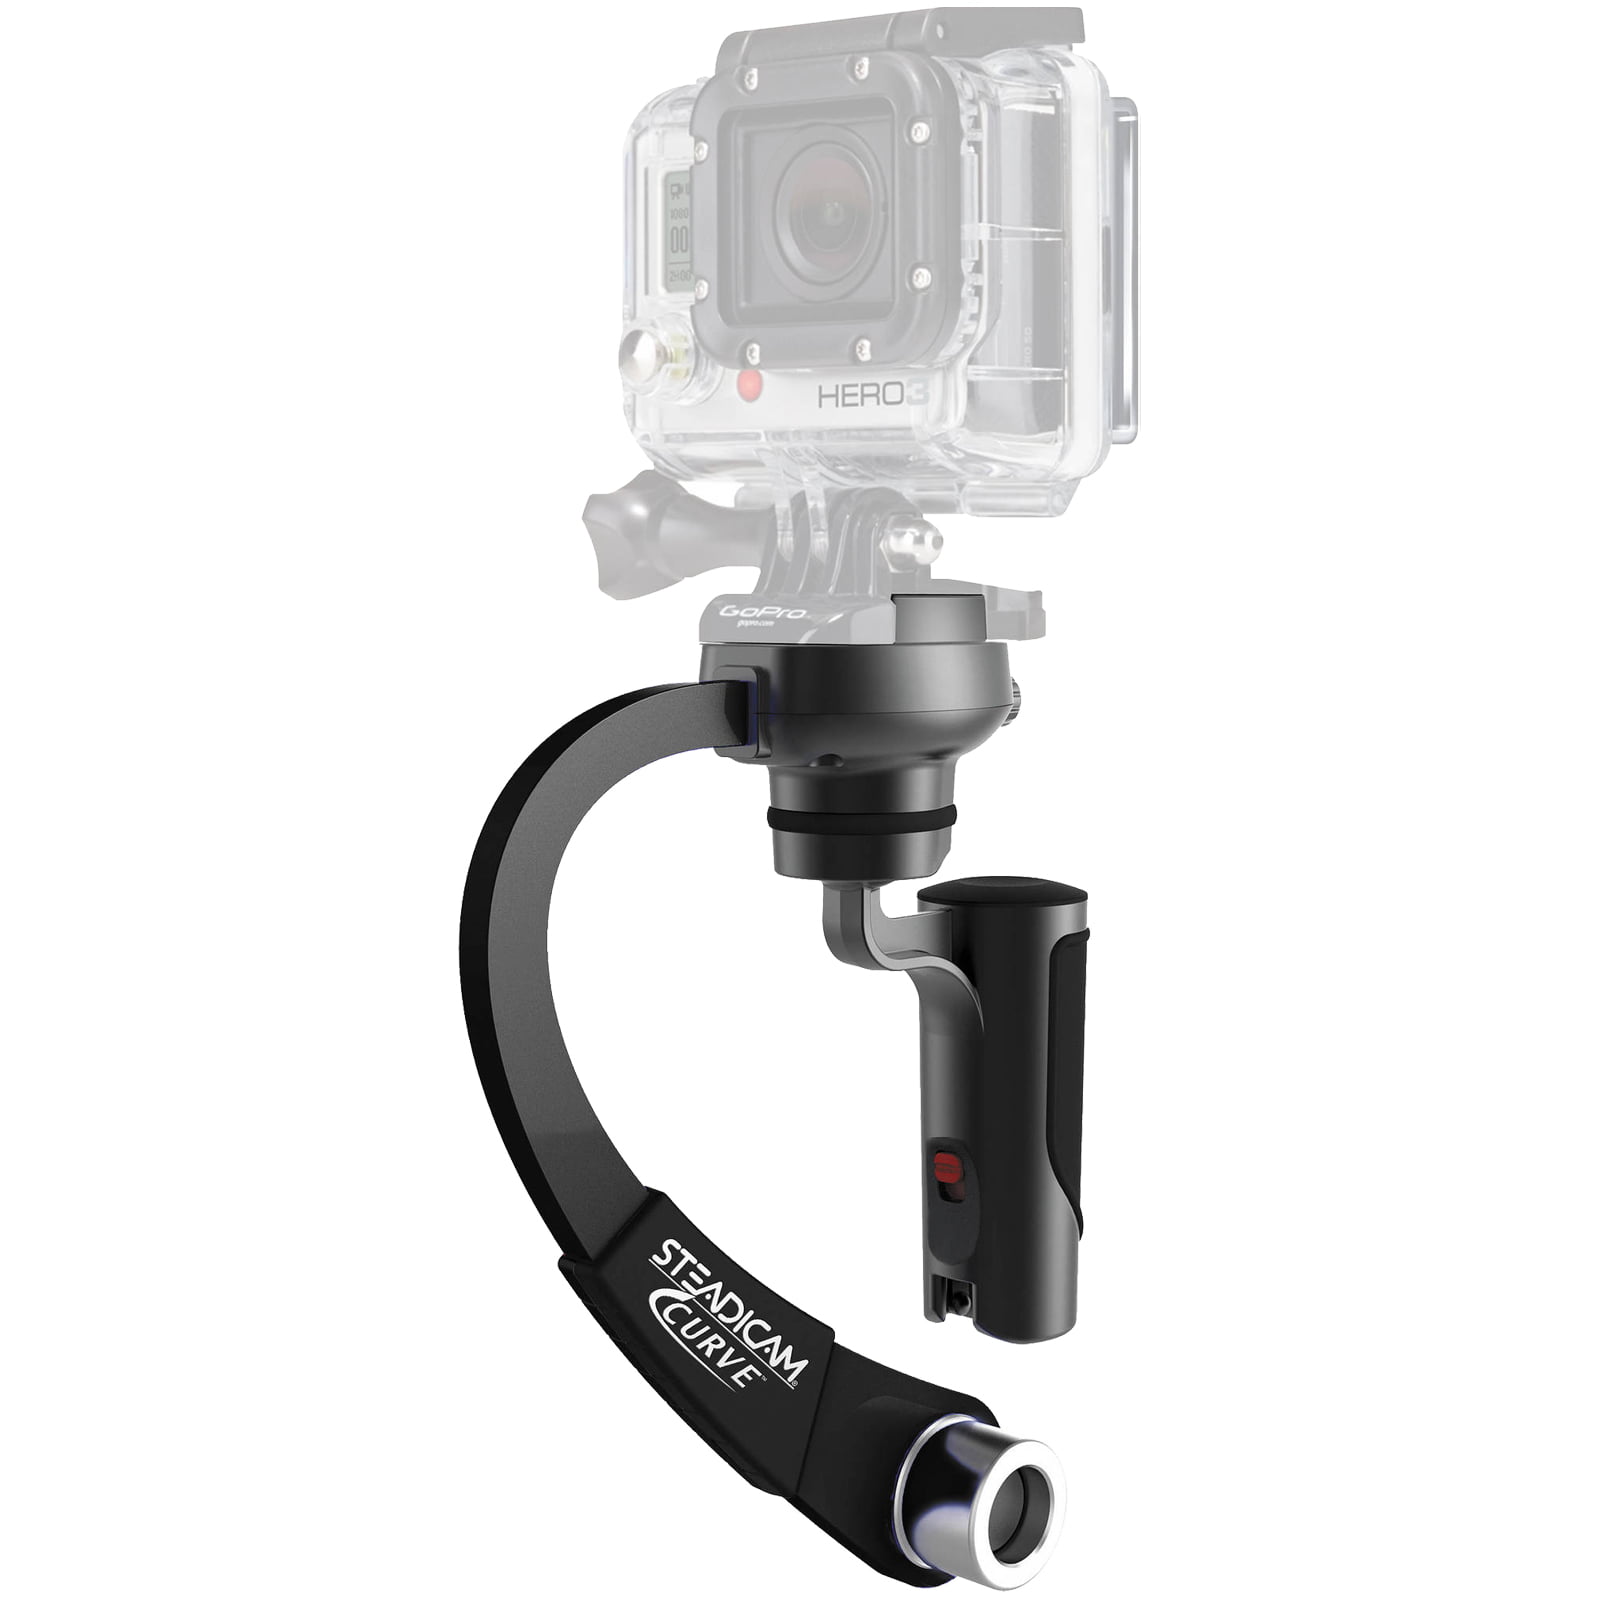 Hotdog 3 caméra vidéo mobile Go Pro Steady Cam Stabilisateur $ $ $ Bargain $ $ $ 